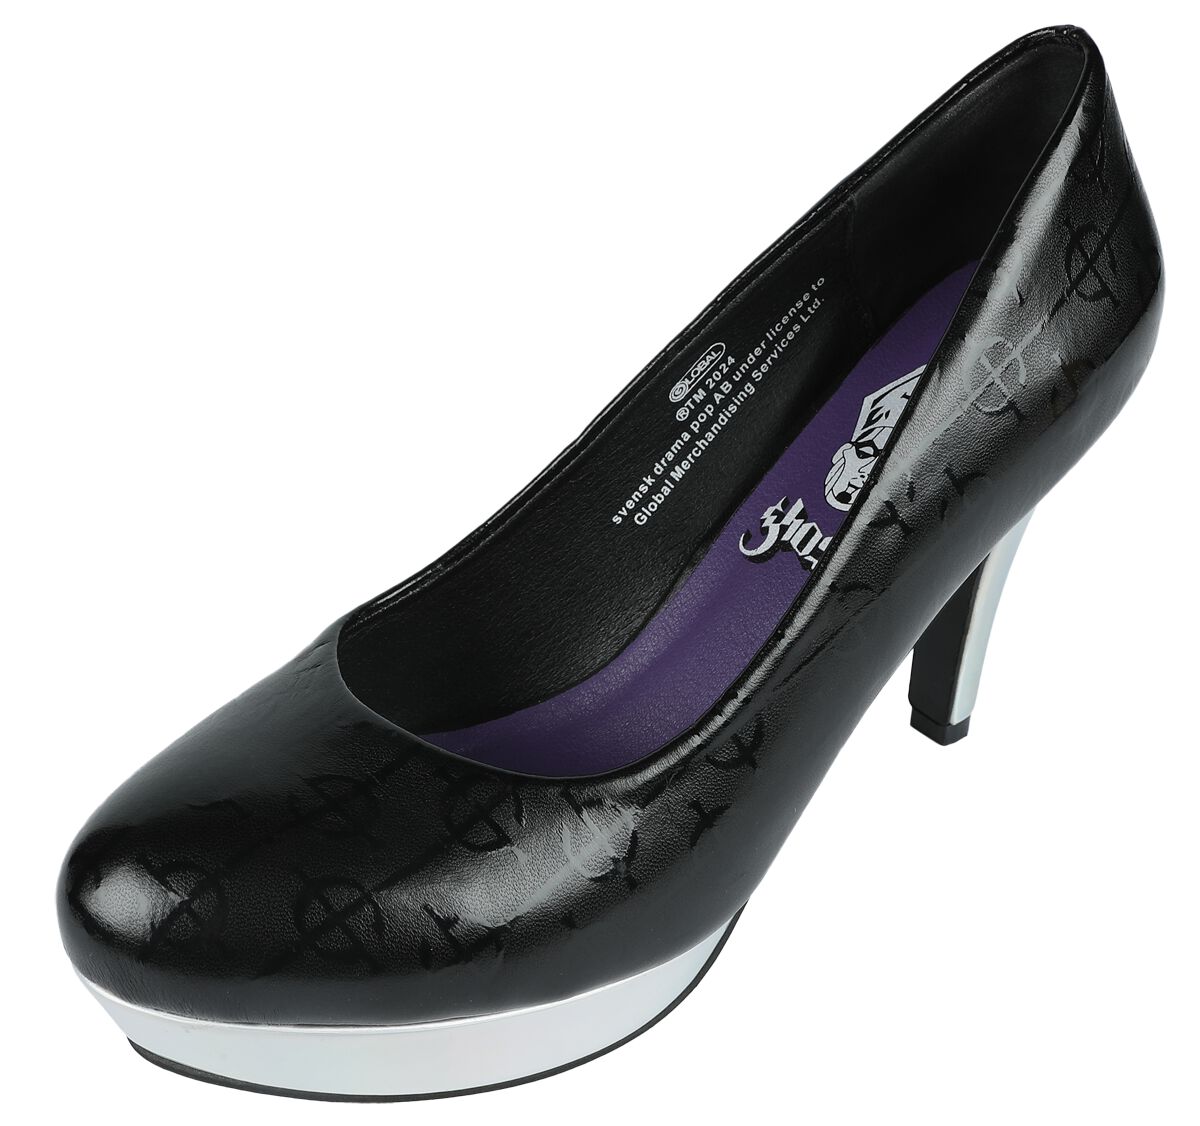 Ghost High Heel - EMP Signature Collection - EU37 bis EU41 - für Damen - Größe EU41 - schwarz/silberfarben  - EMP exklusives Merchandise!